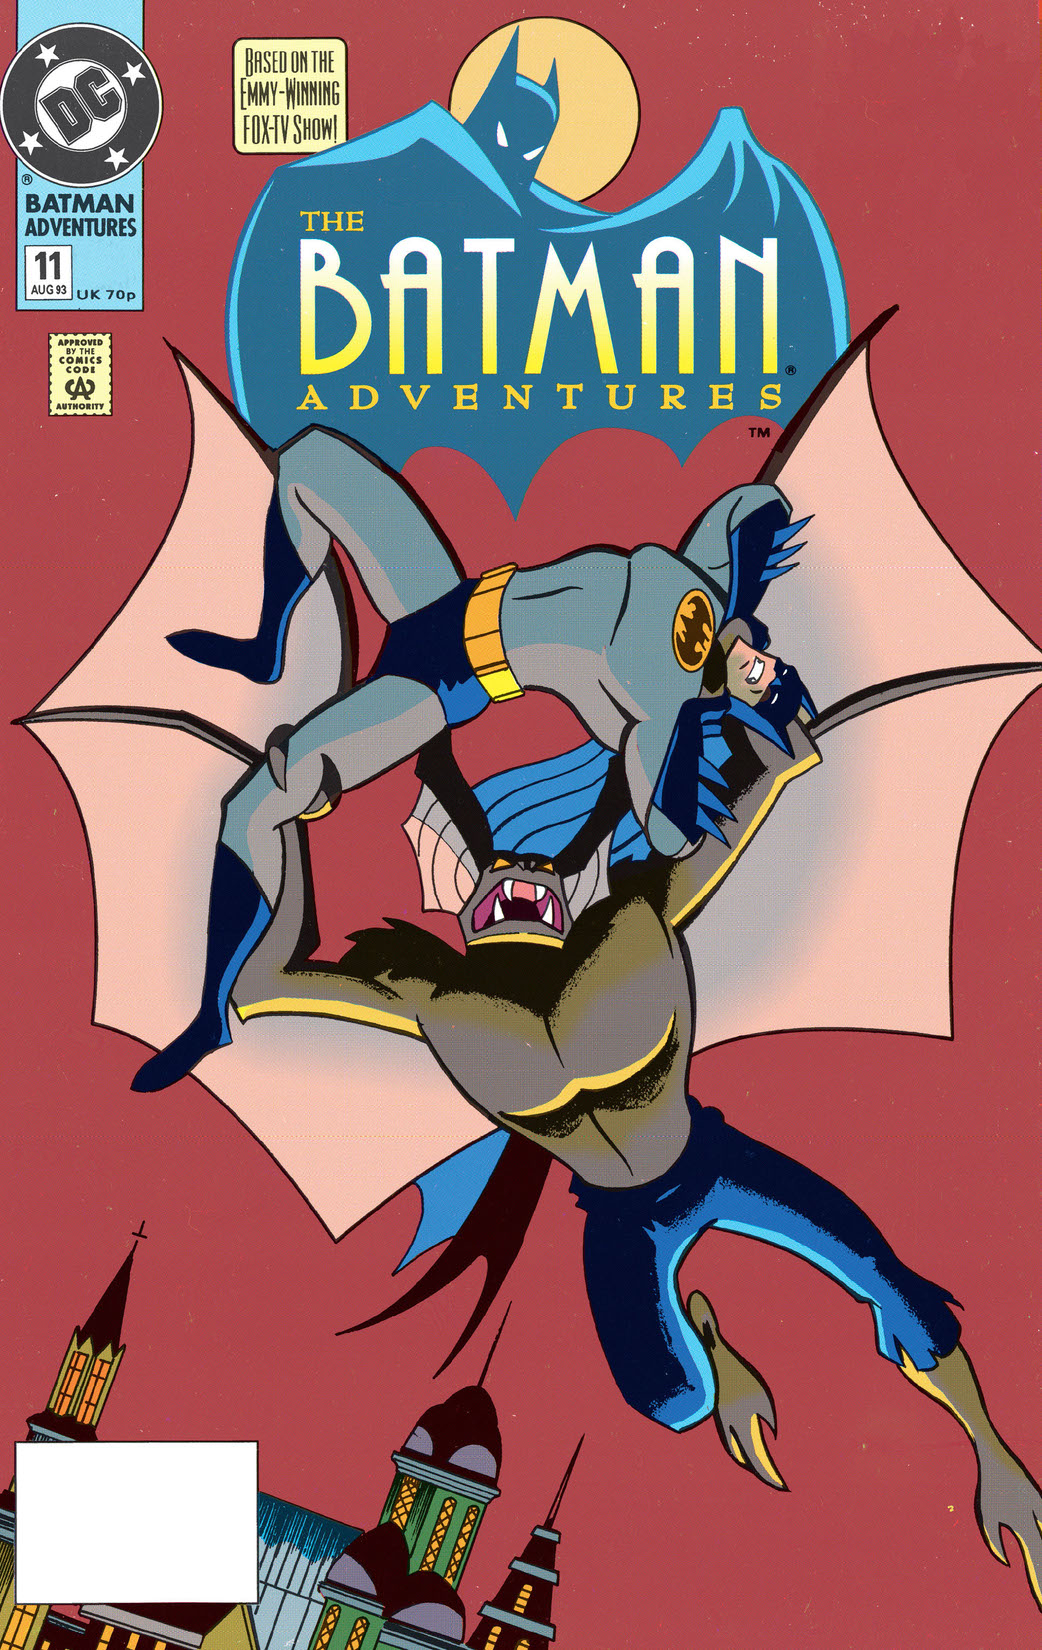 The Batman Adventures #11 preview images